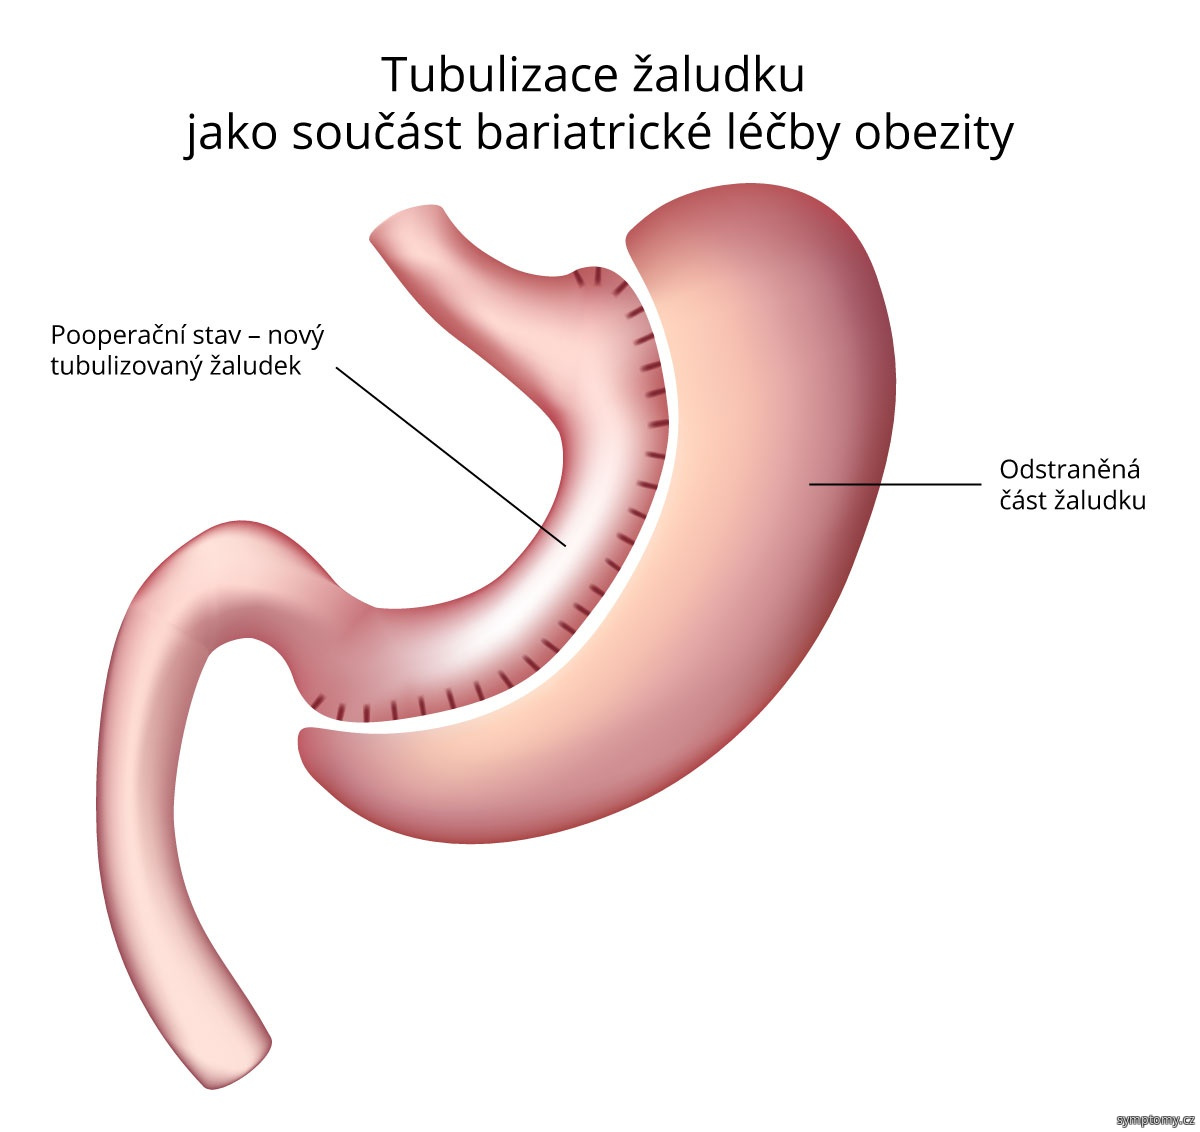 Tubulizace žaludku jako součást bariatrické léčby obezity